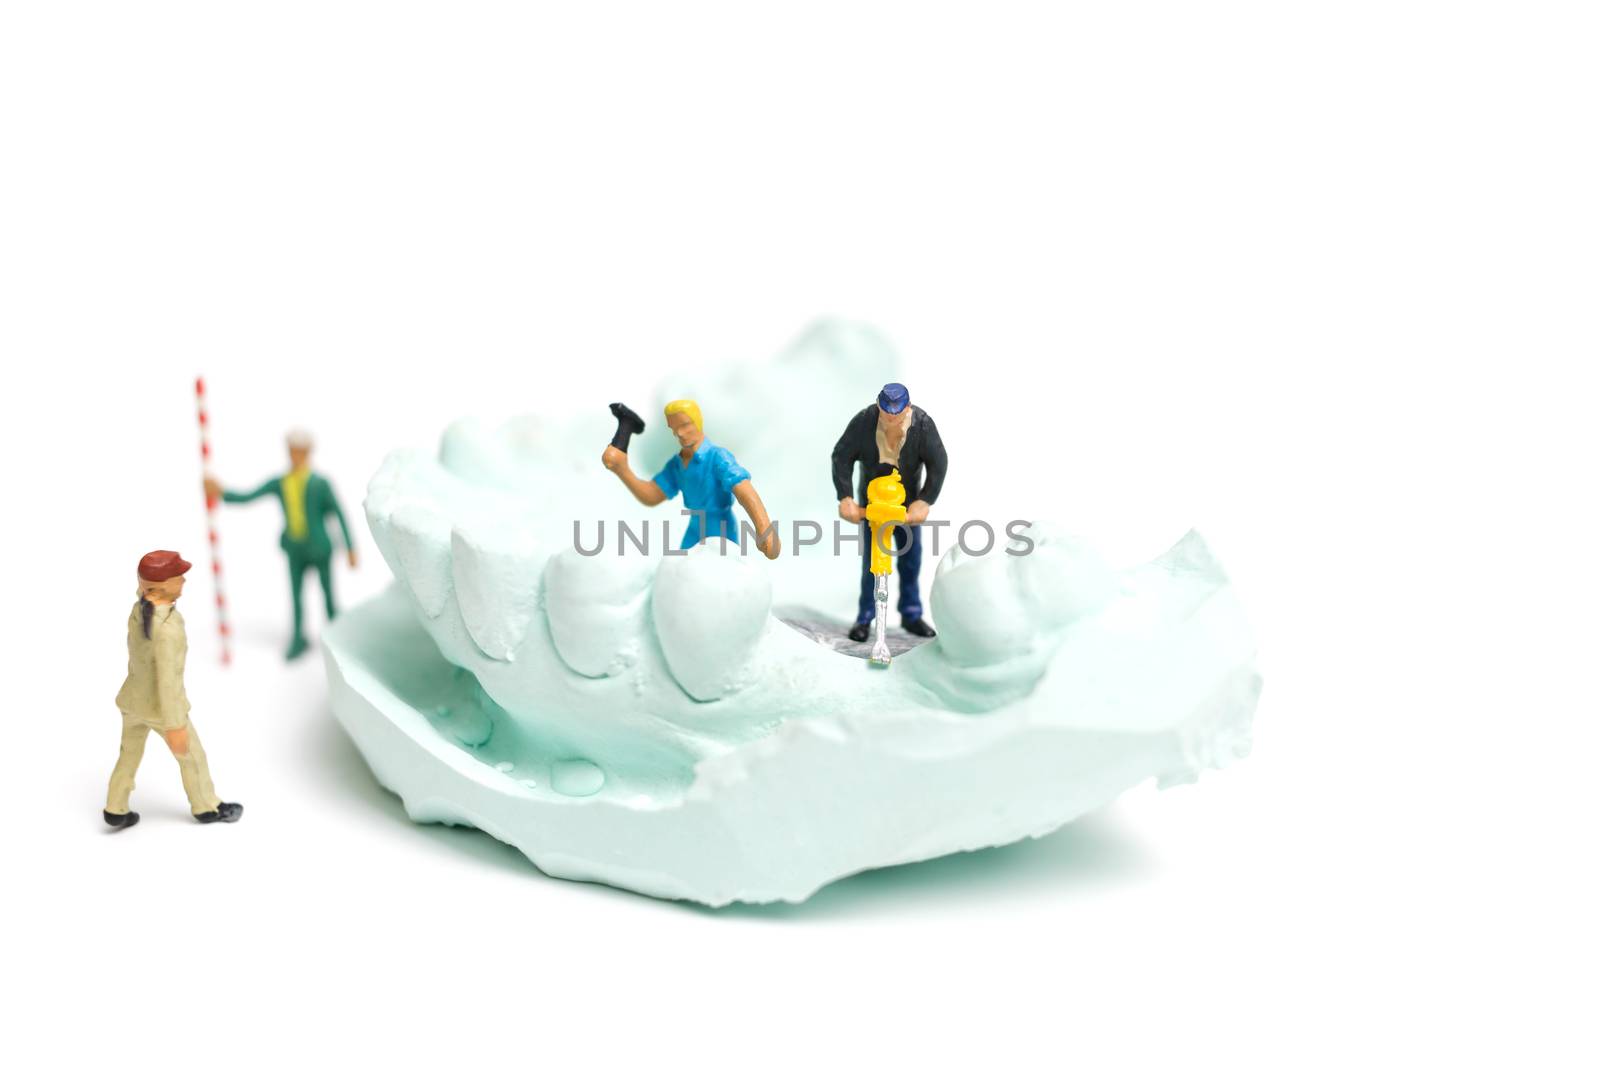 Miniature Worker team is filing fake teeth by sirichaiyaymicro